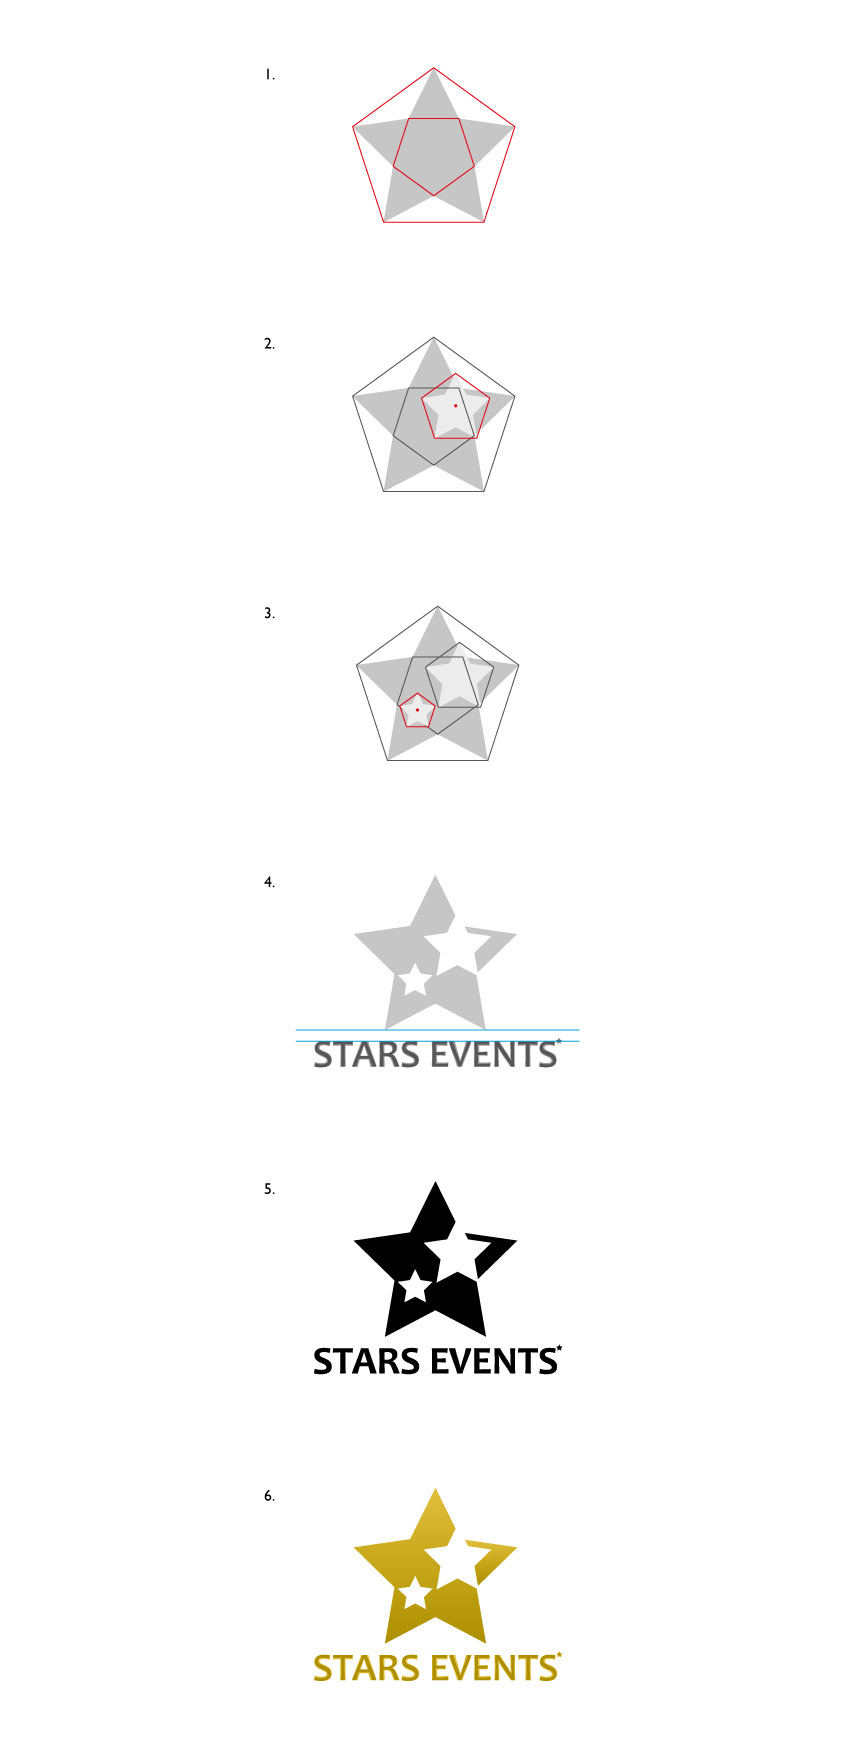 stars star Events Event Stars Events Star Events Star Event stars event logo logos models